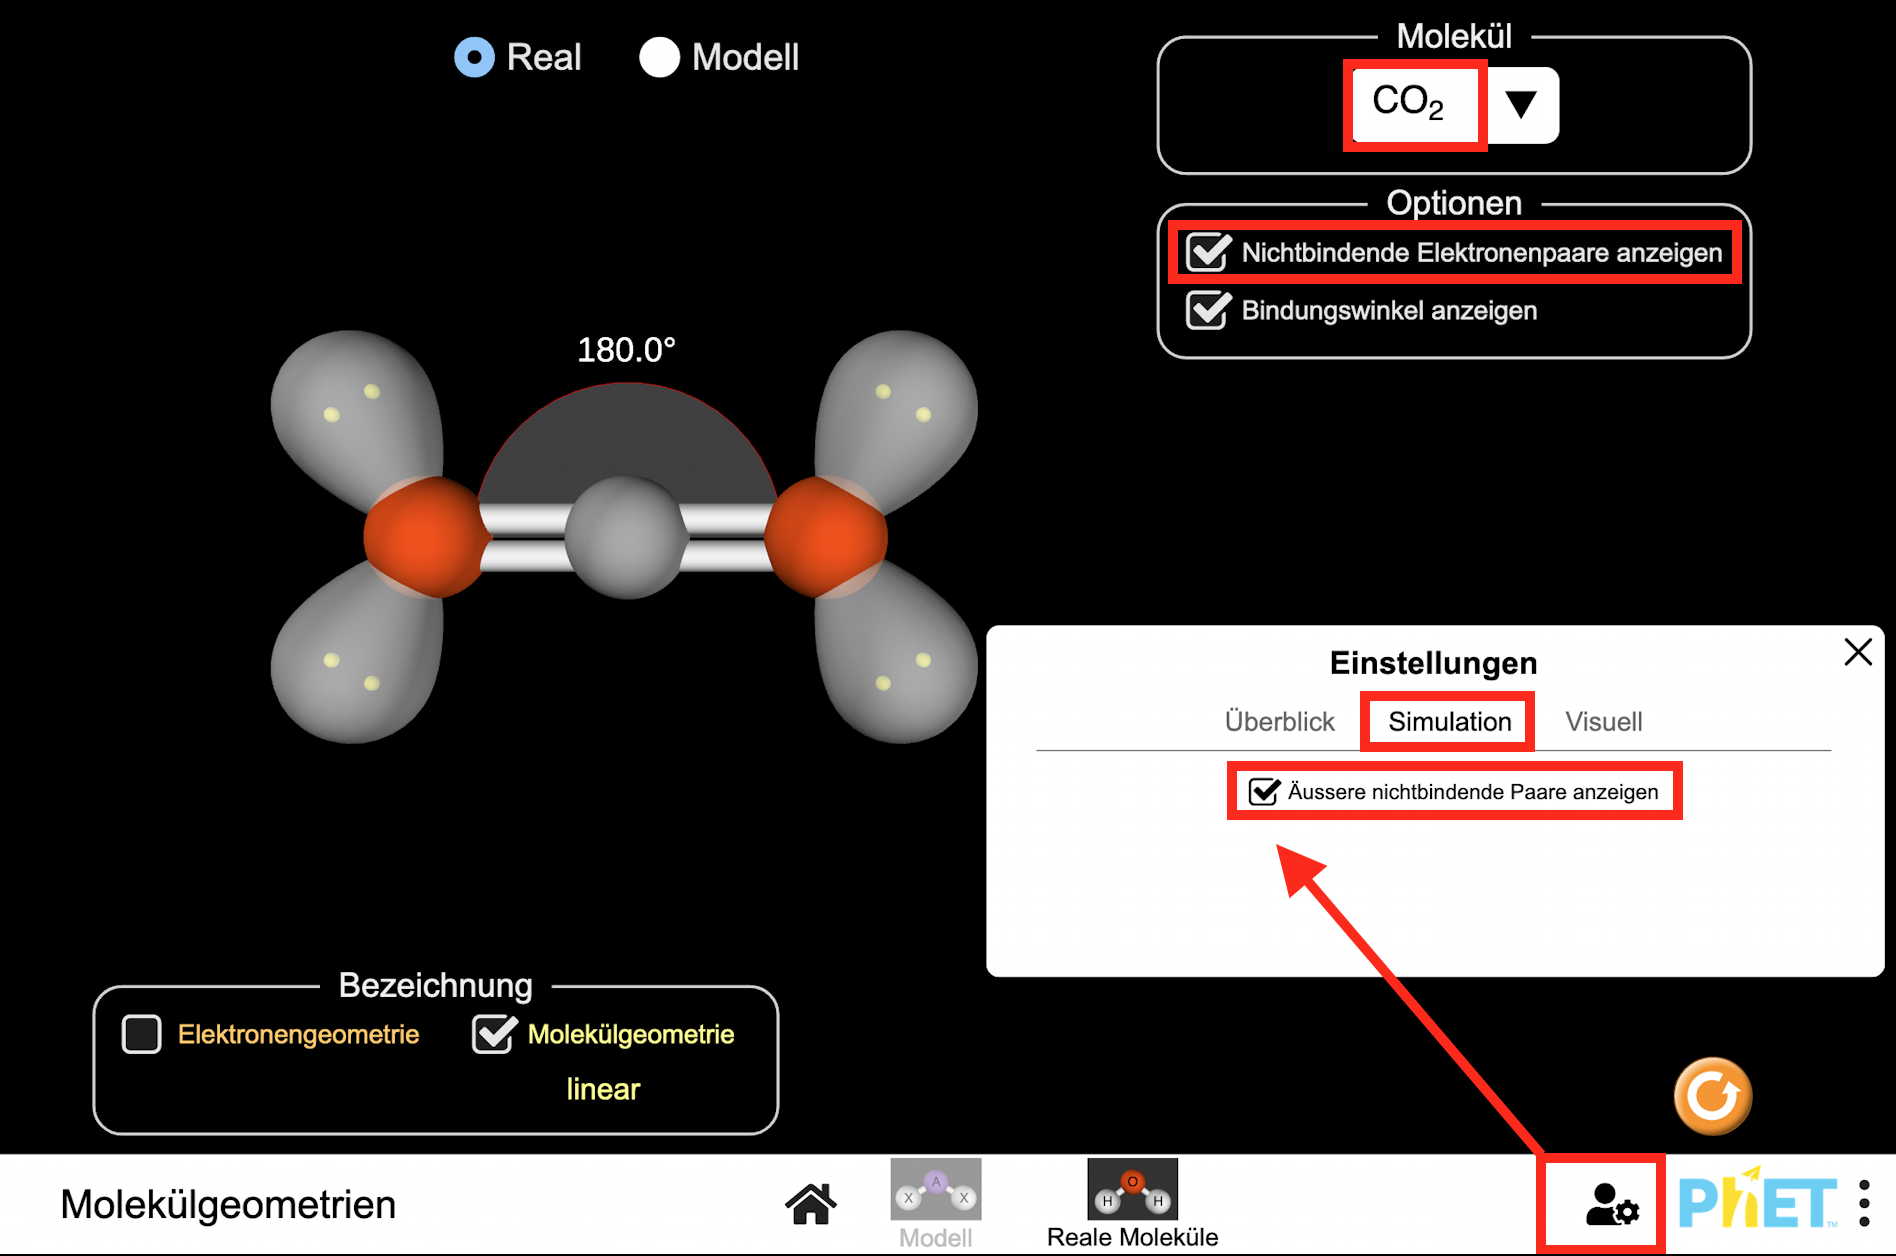 Benutzeroberfläche für die interaktive Animation zur Molekülgeometrie unter Darstellung der nichtbindenden Elektronenpaare (PhET, University of Colorado, Boulder)